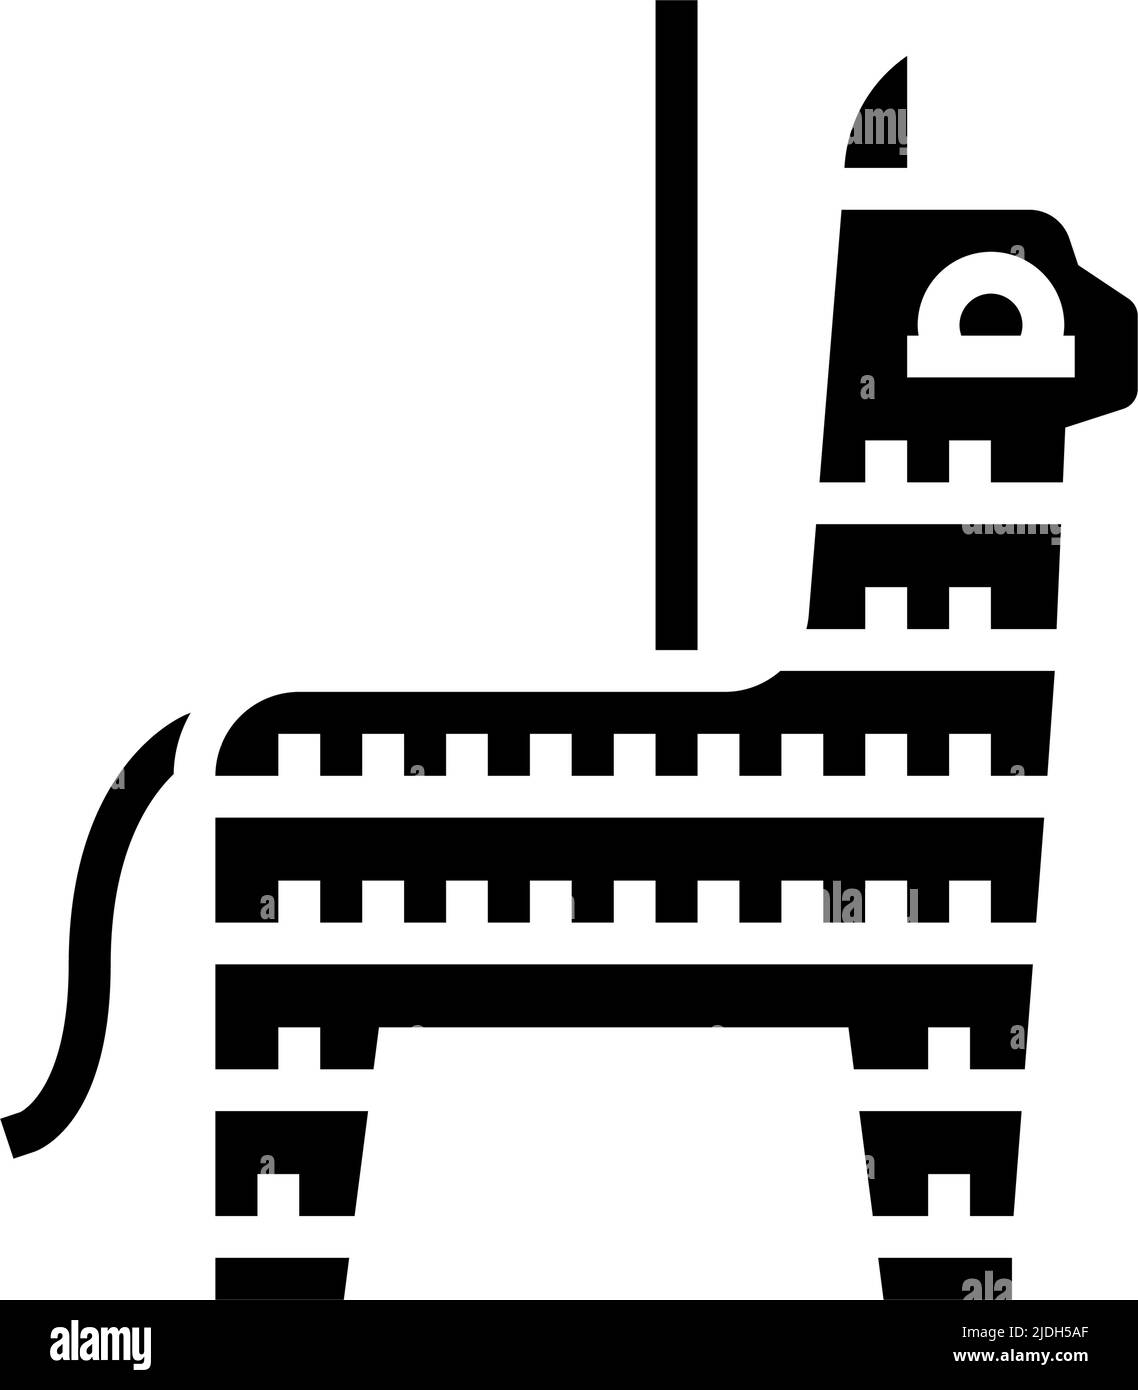 pinata mexikanische Glyphe Symbol Vektor-Illustration Stock Vektor